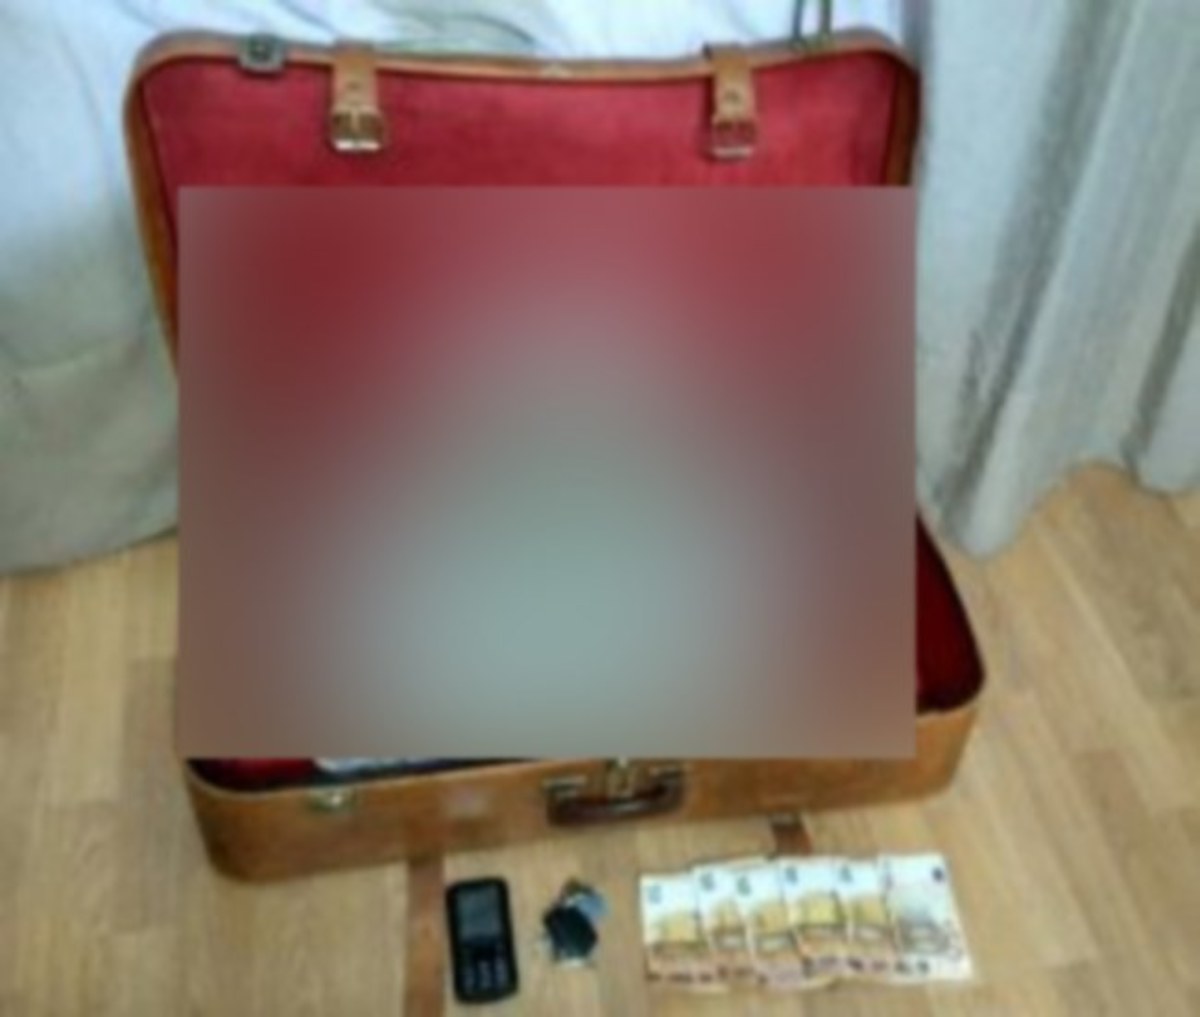 Καστοριά: Άνοιξαν τη βαλίτσα και είδαν μέσα αυτή την εικόνα – Στο φως τα “ένοχα” μυστικά του [pics]